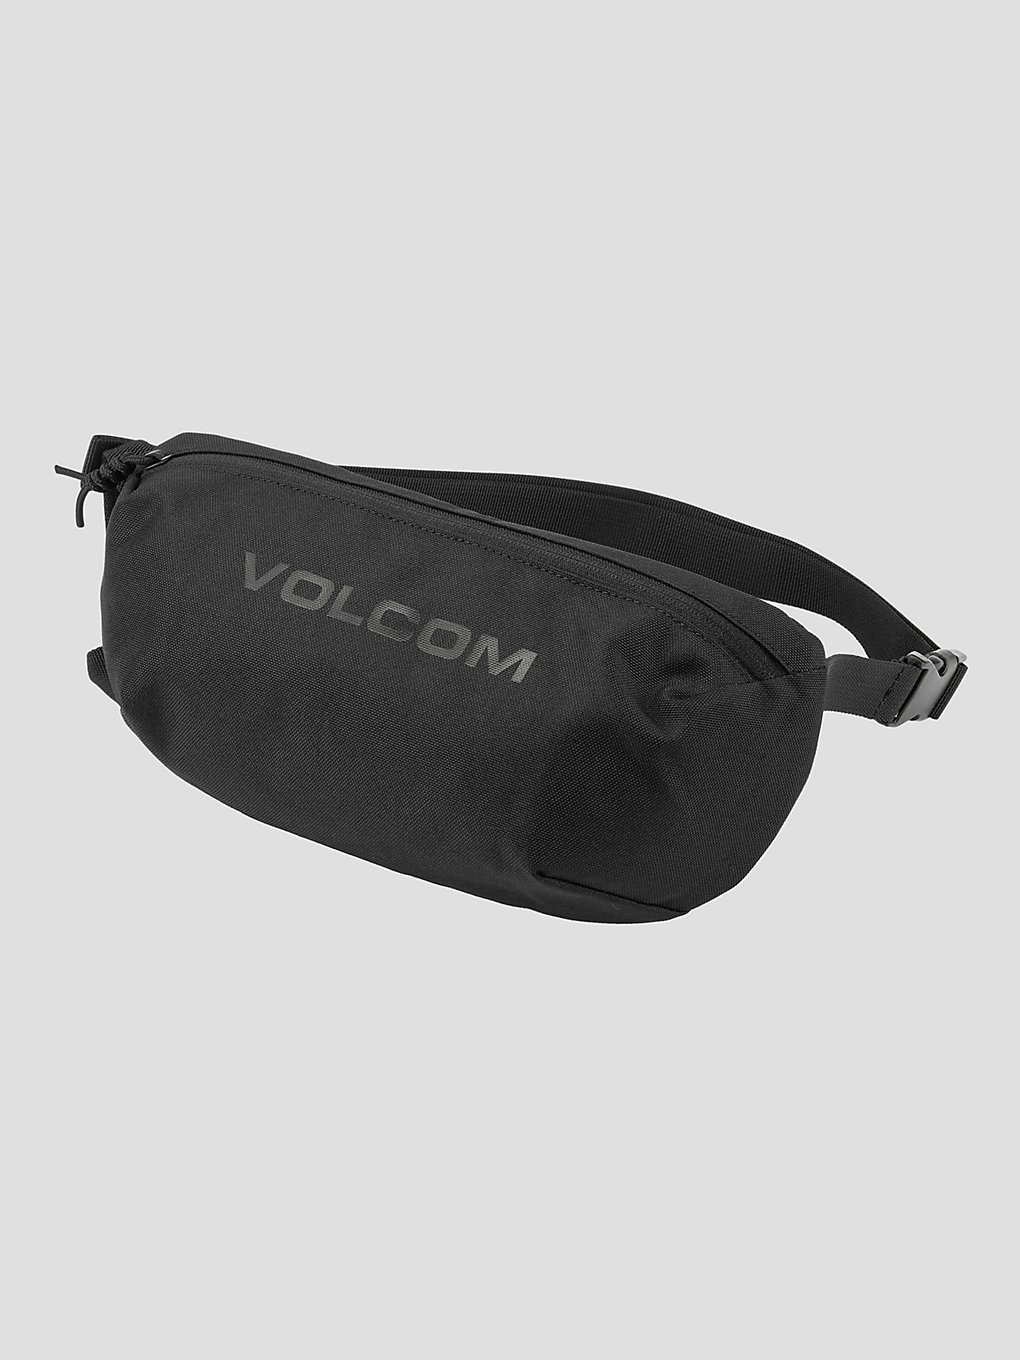 Volcom Mini Waisted Umhängetasche black kaufen